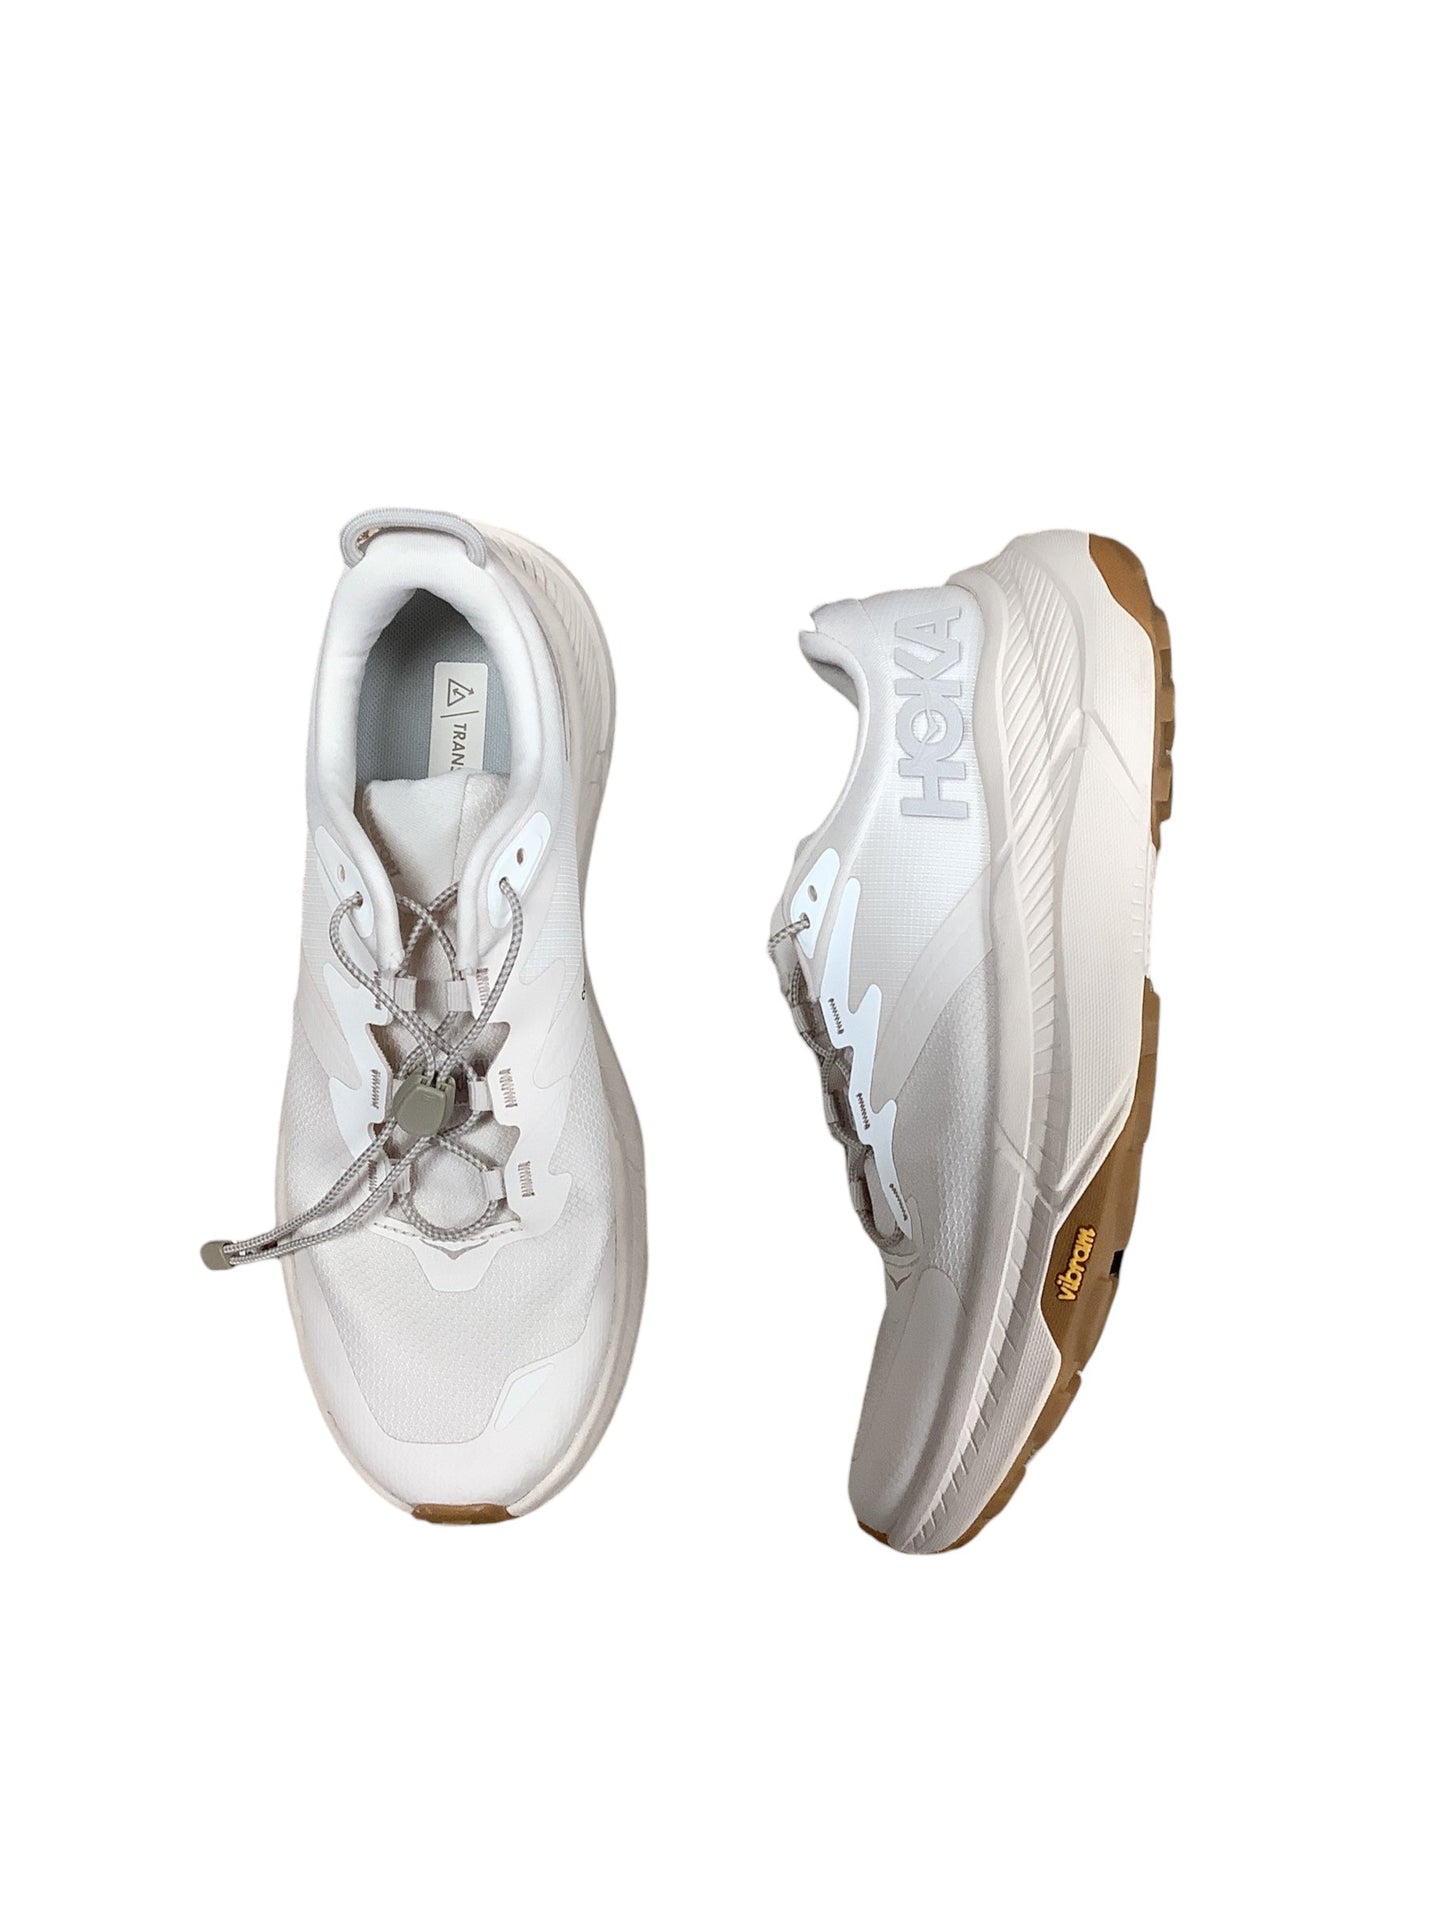 Cream Shoes Athletic Hoka, Size 8